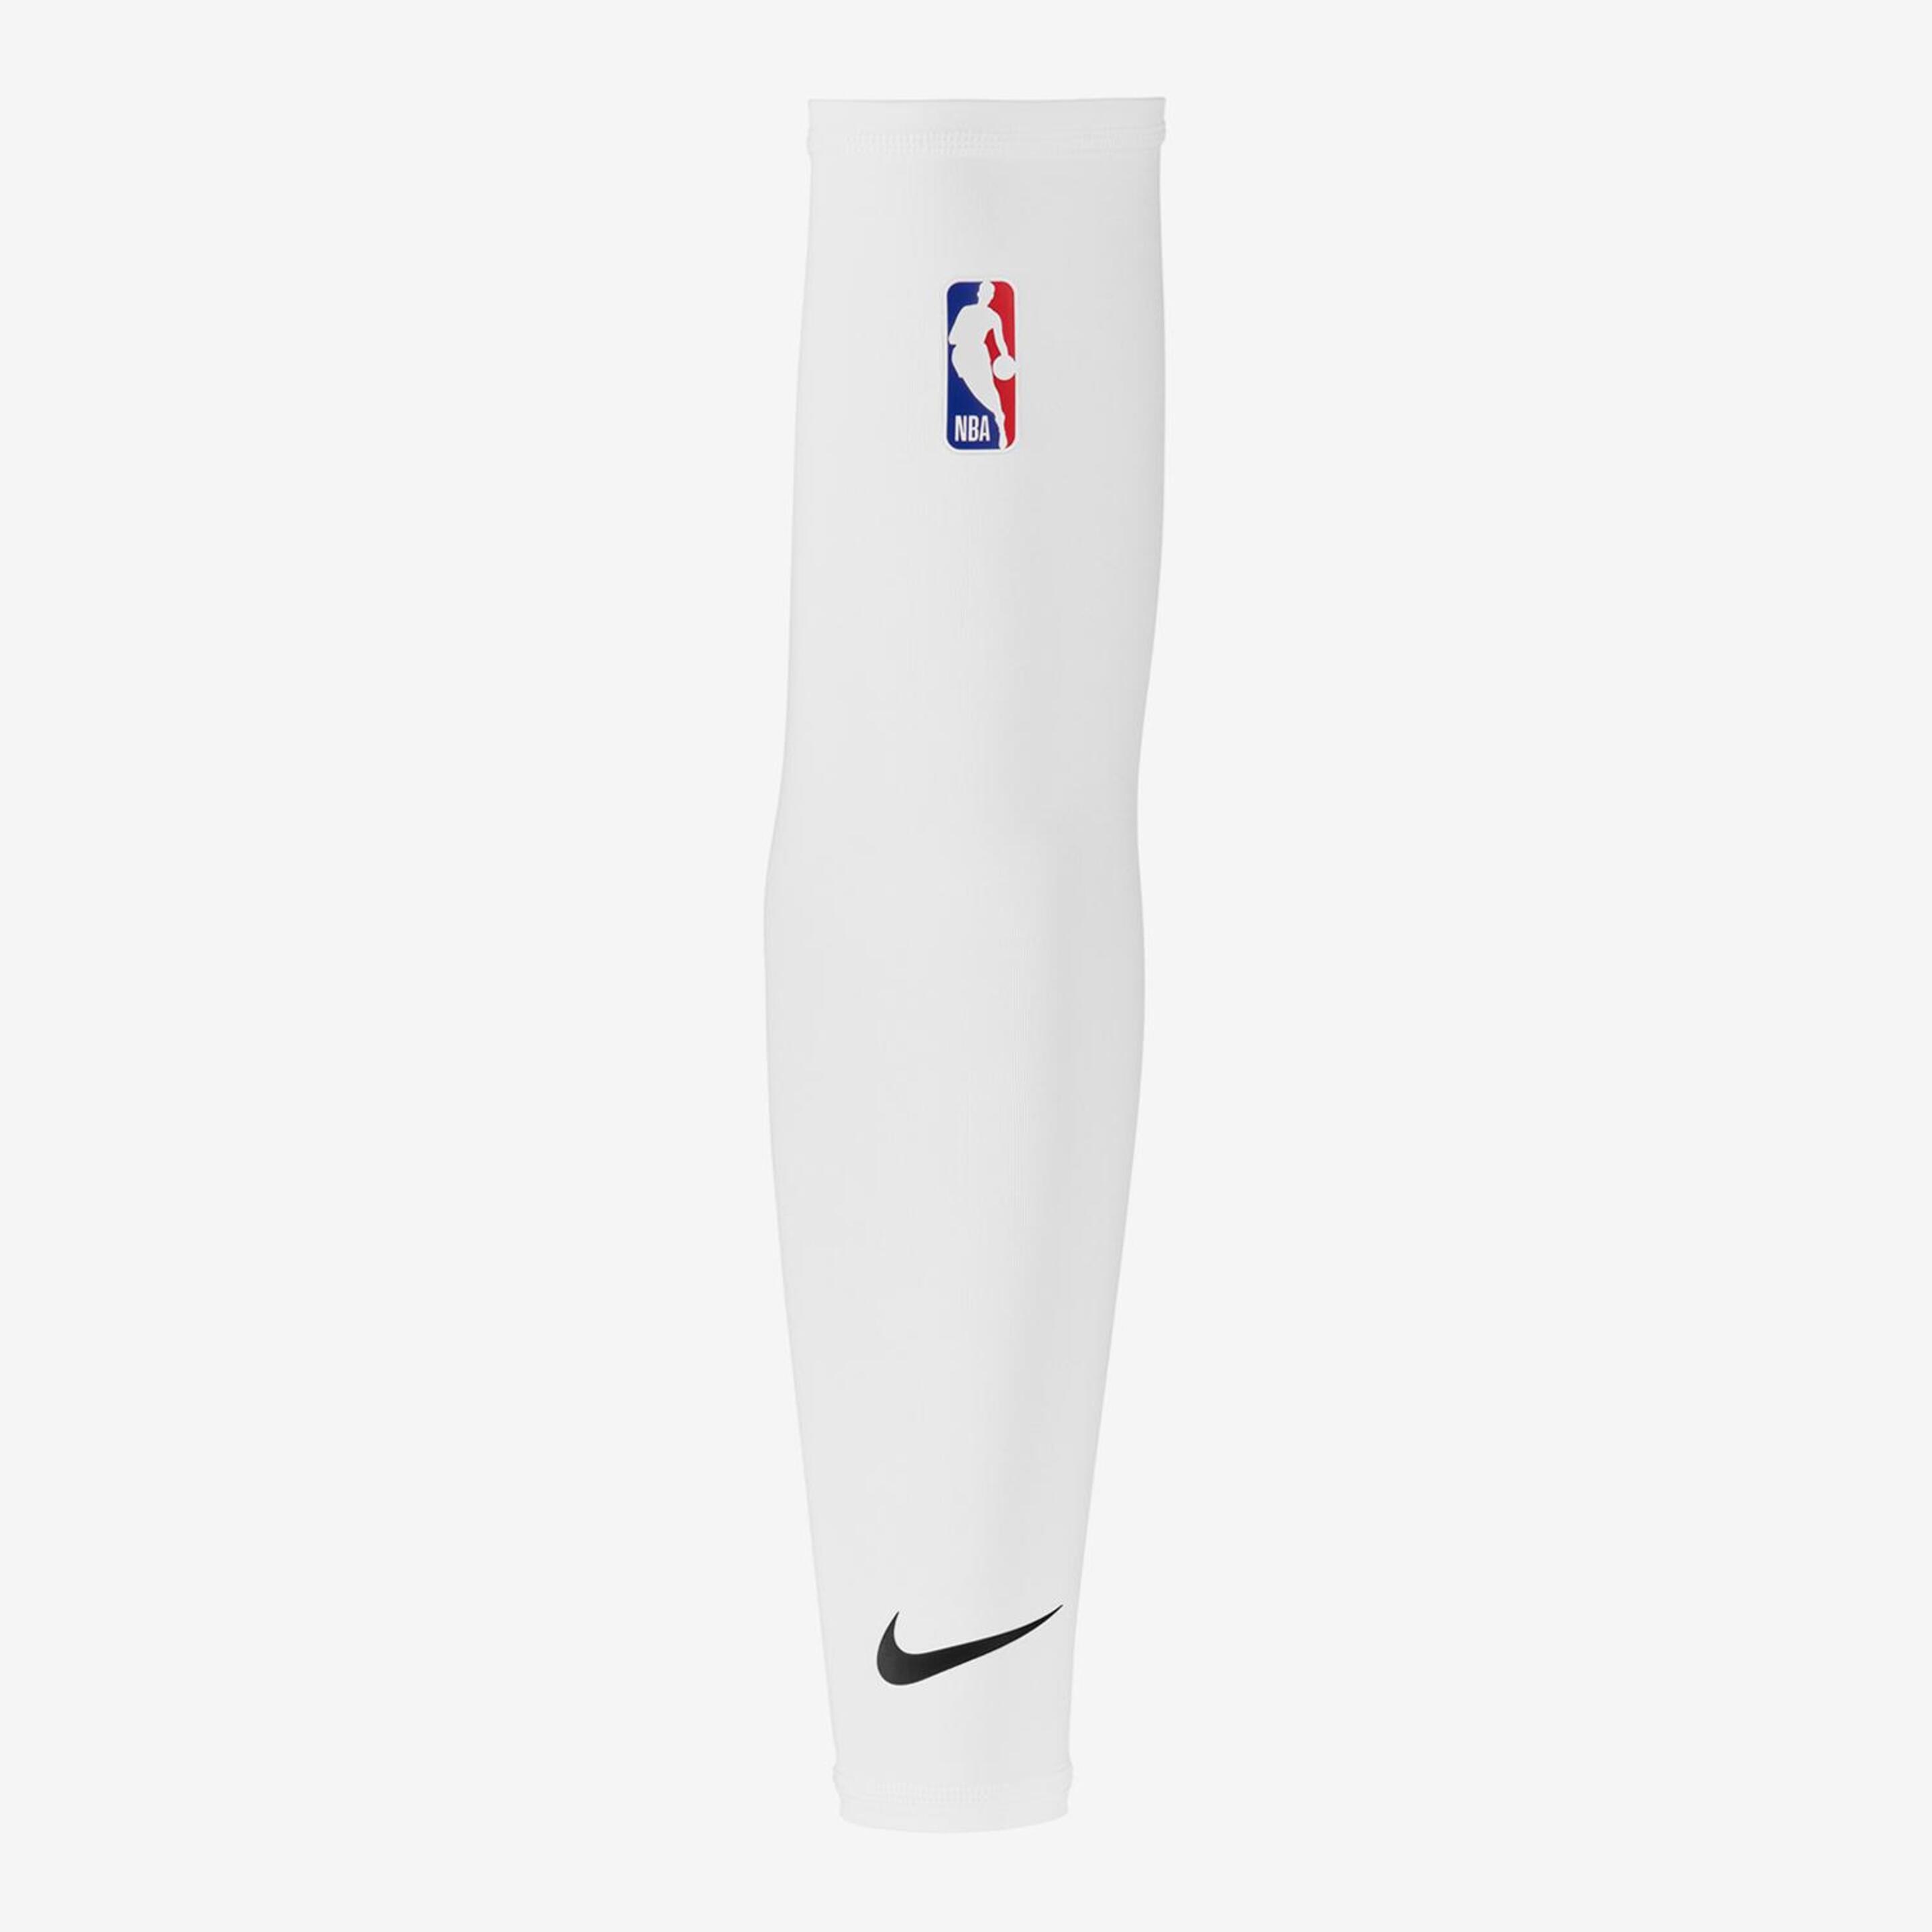 Nike Shooter Nba 2.0 - blanco - Manguito Compresión Baloncesto